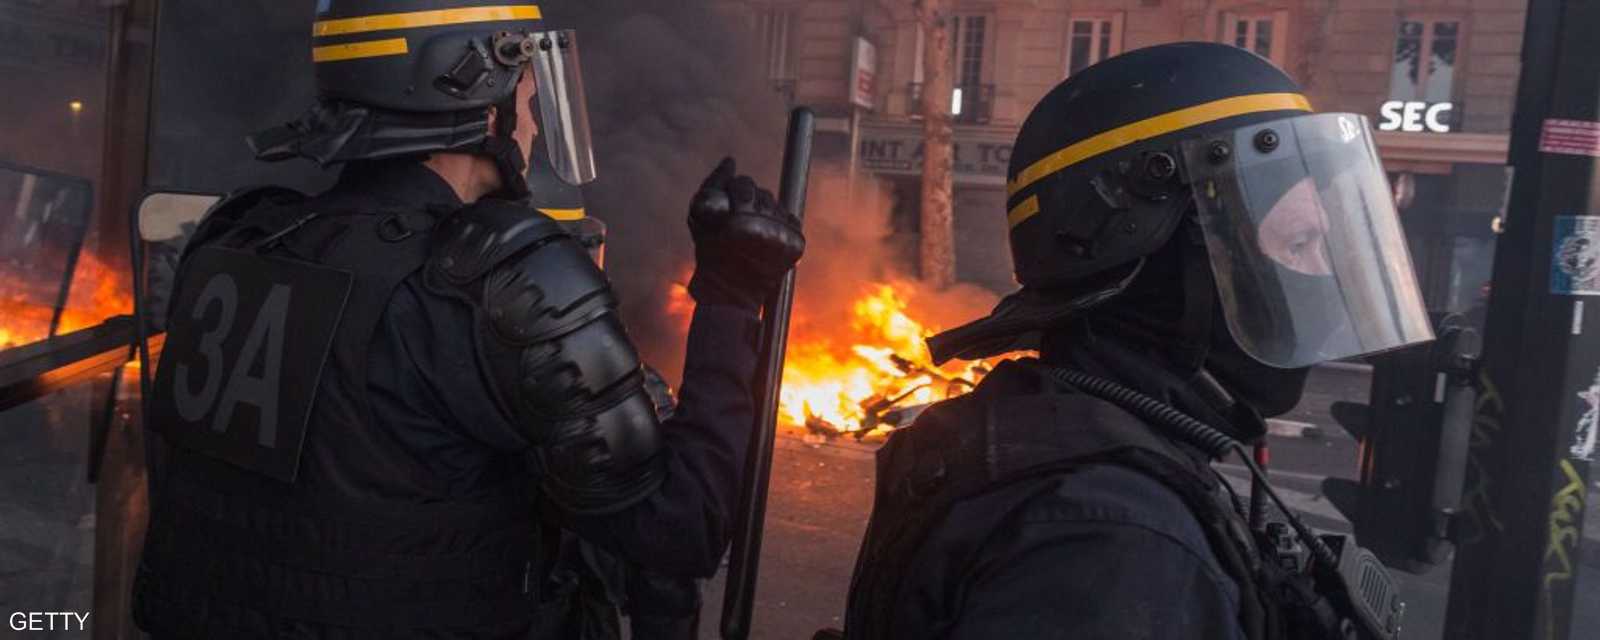 الشرطة الفرنسية تدخلت لتفريق المحتجين